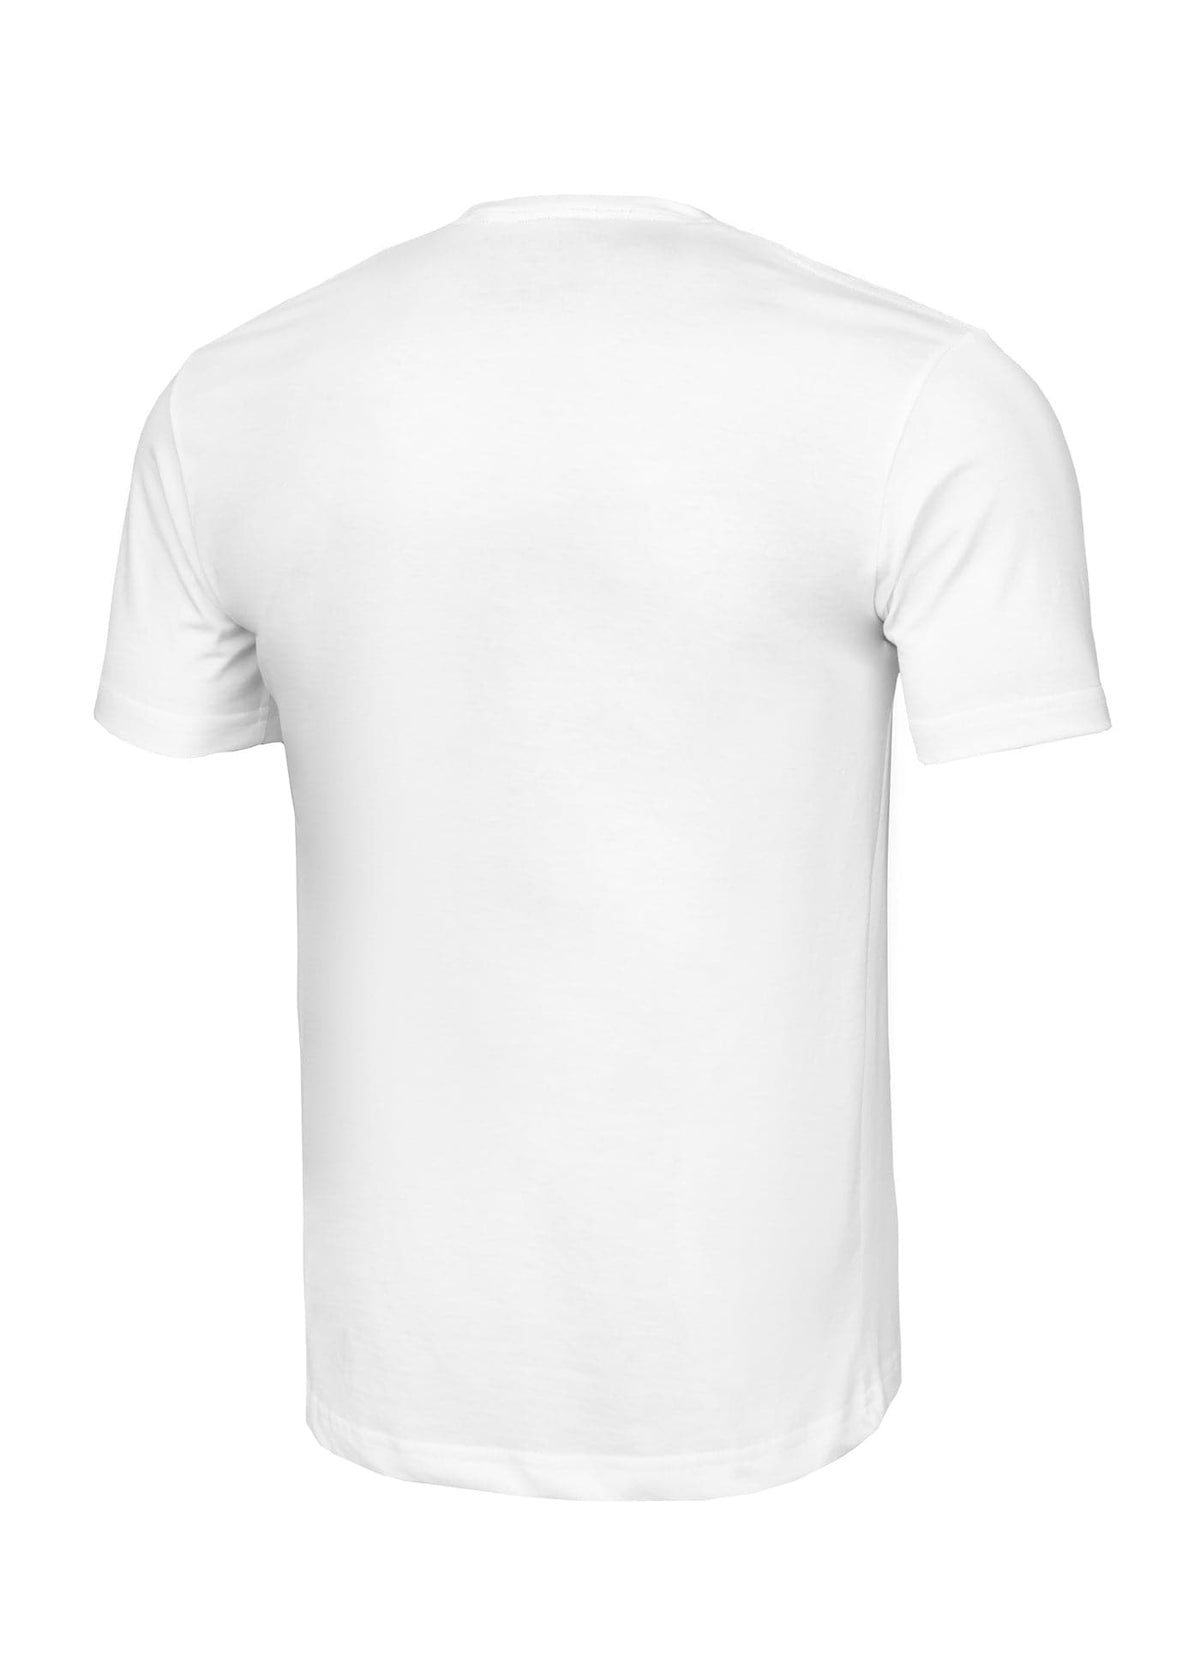 DRIVE Lightweight White T-shirt